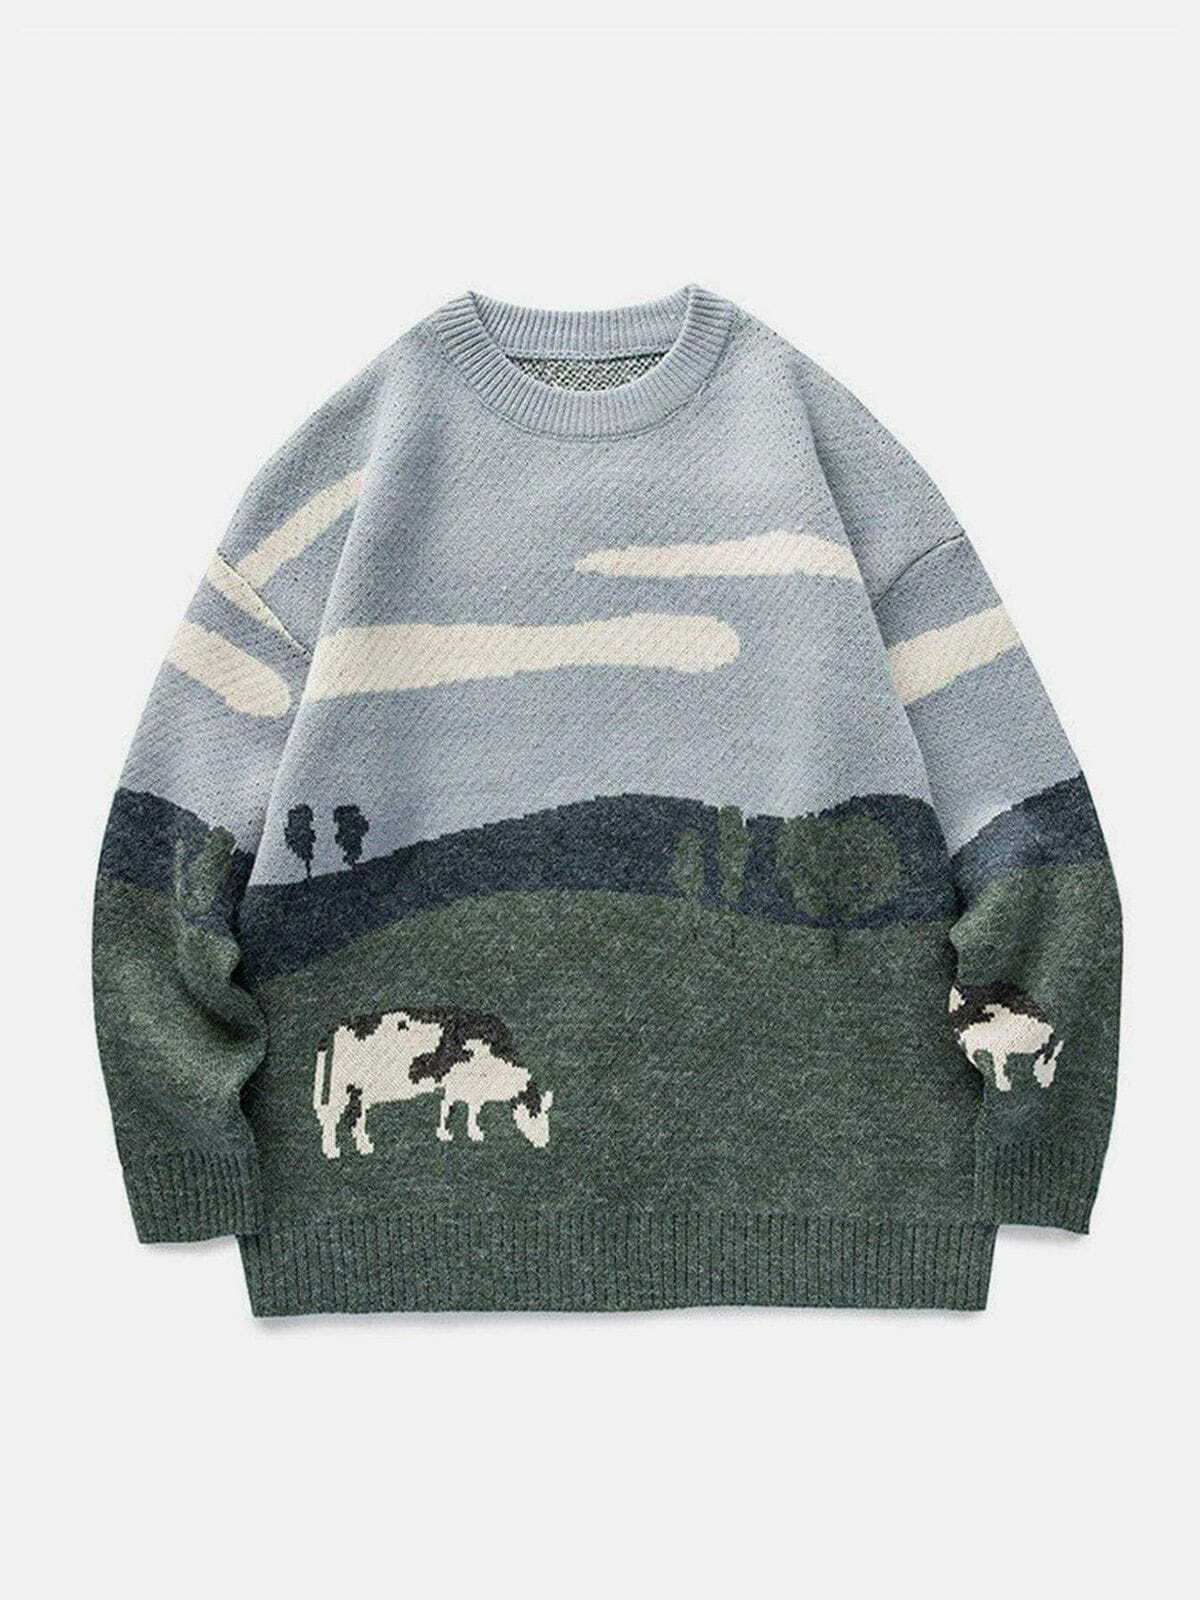 prairie cow print sweater vintage & chic y2k streetwear 3737